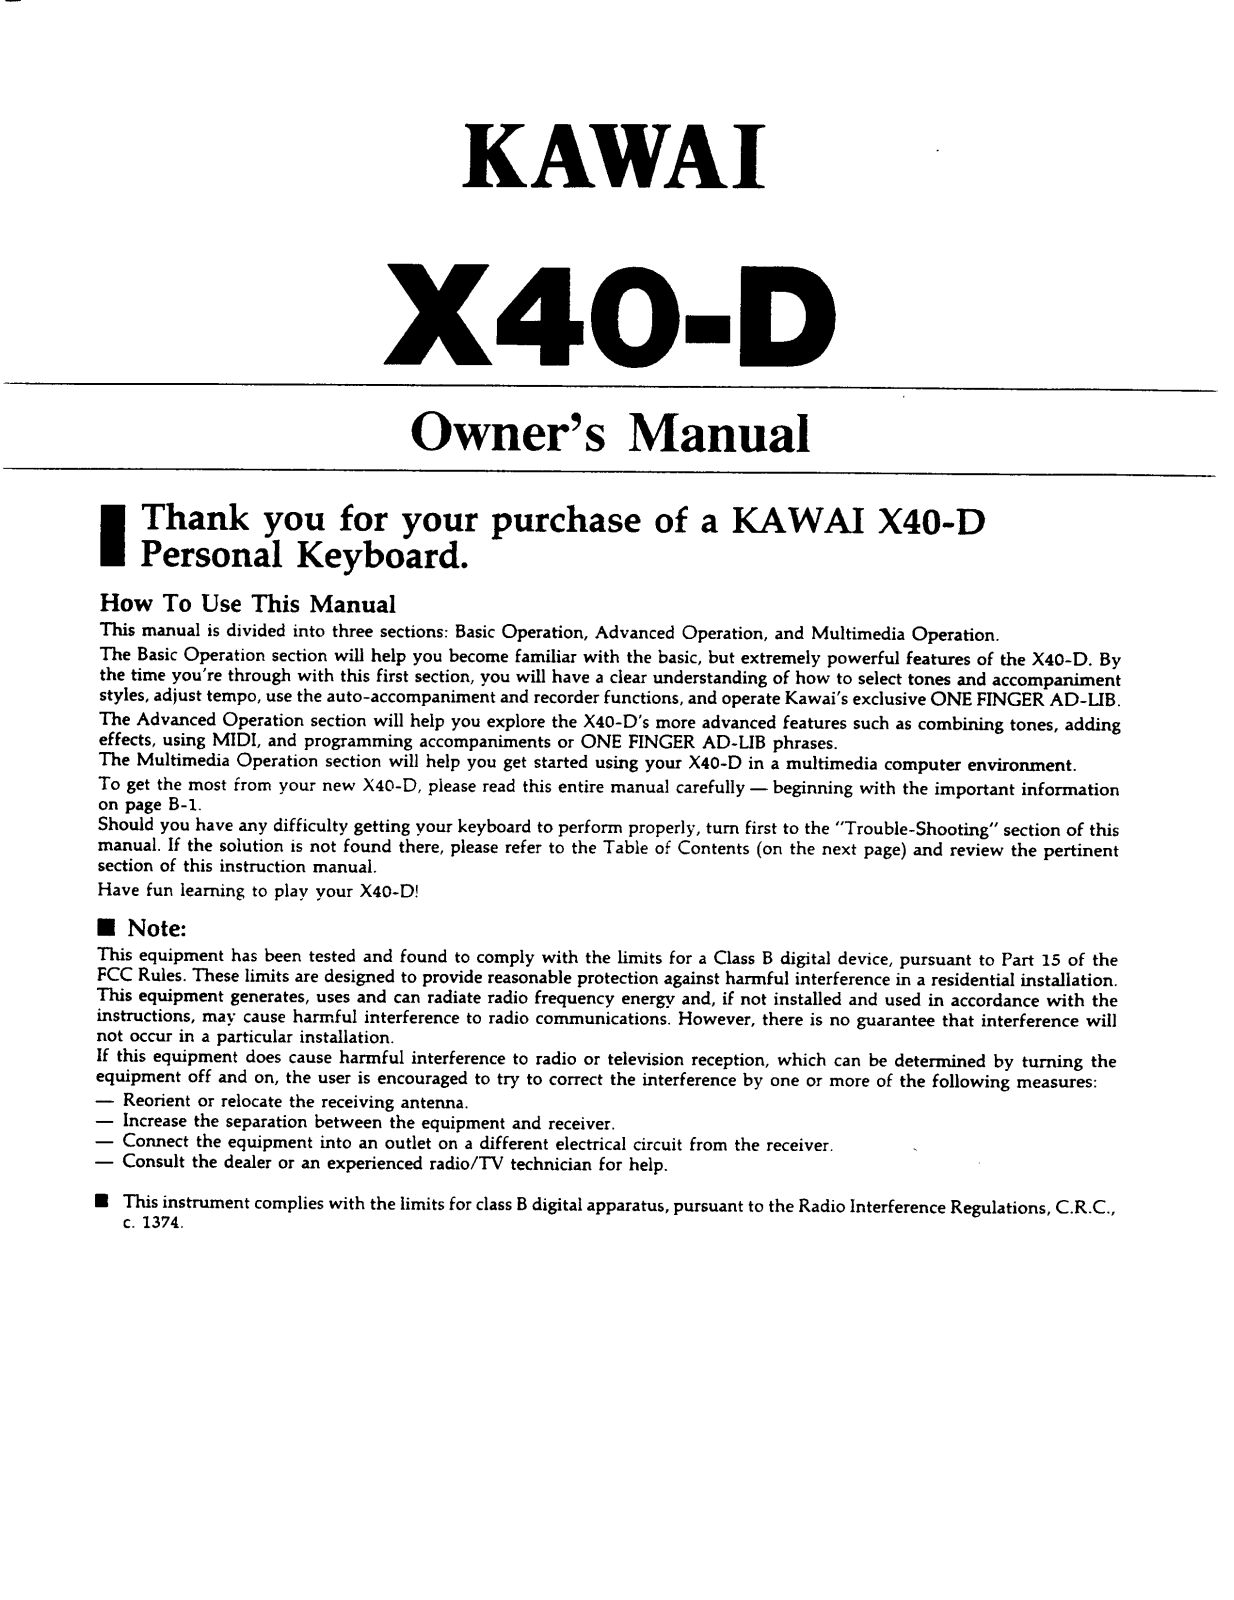 Kawai X40-D User Manual